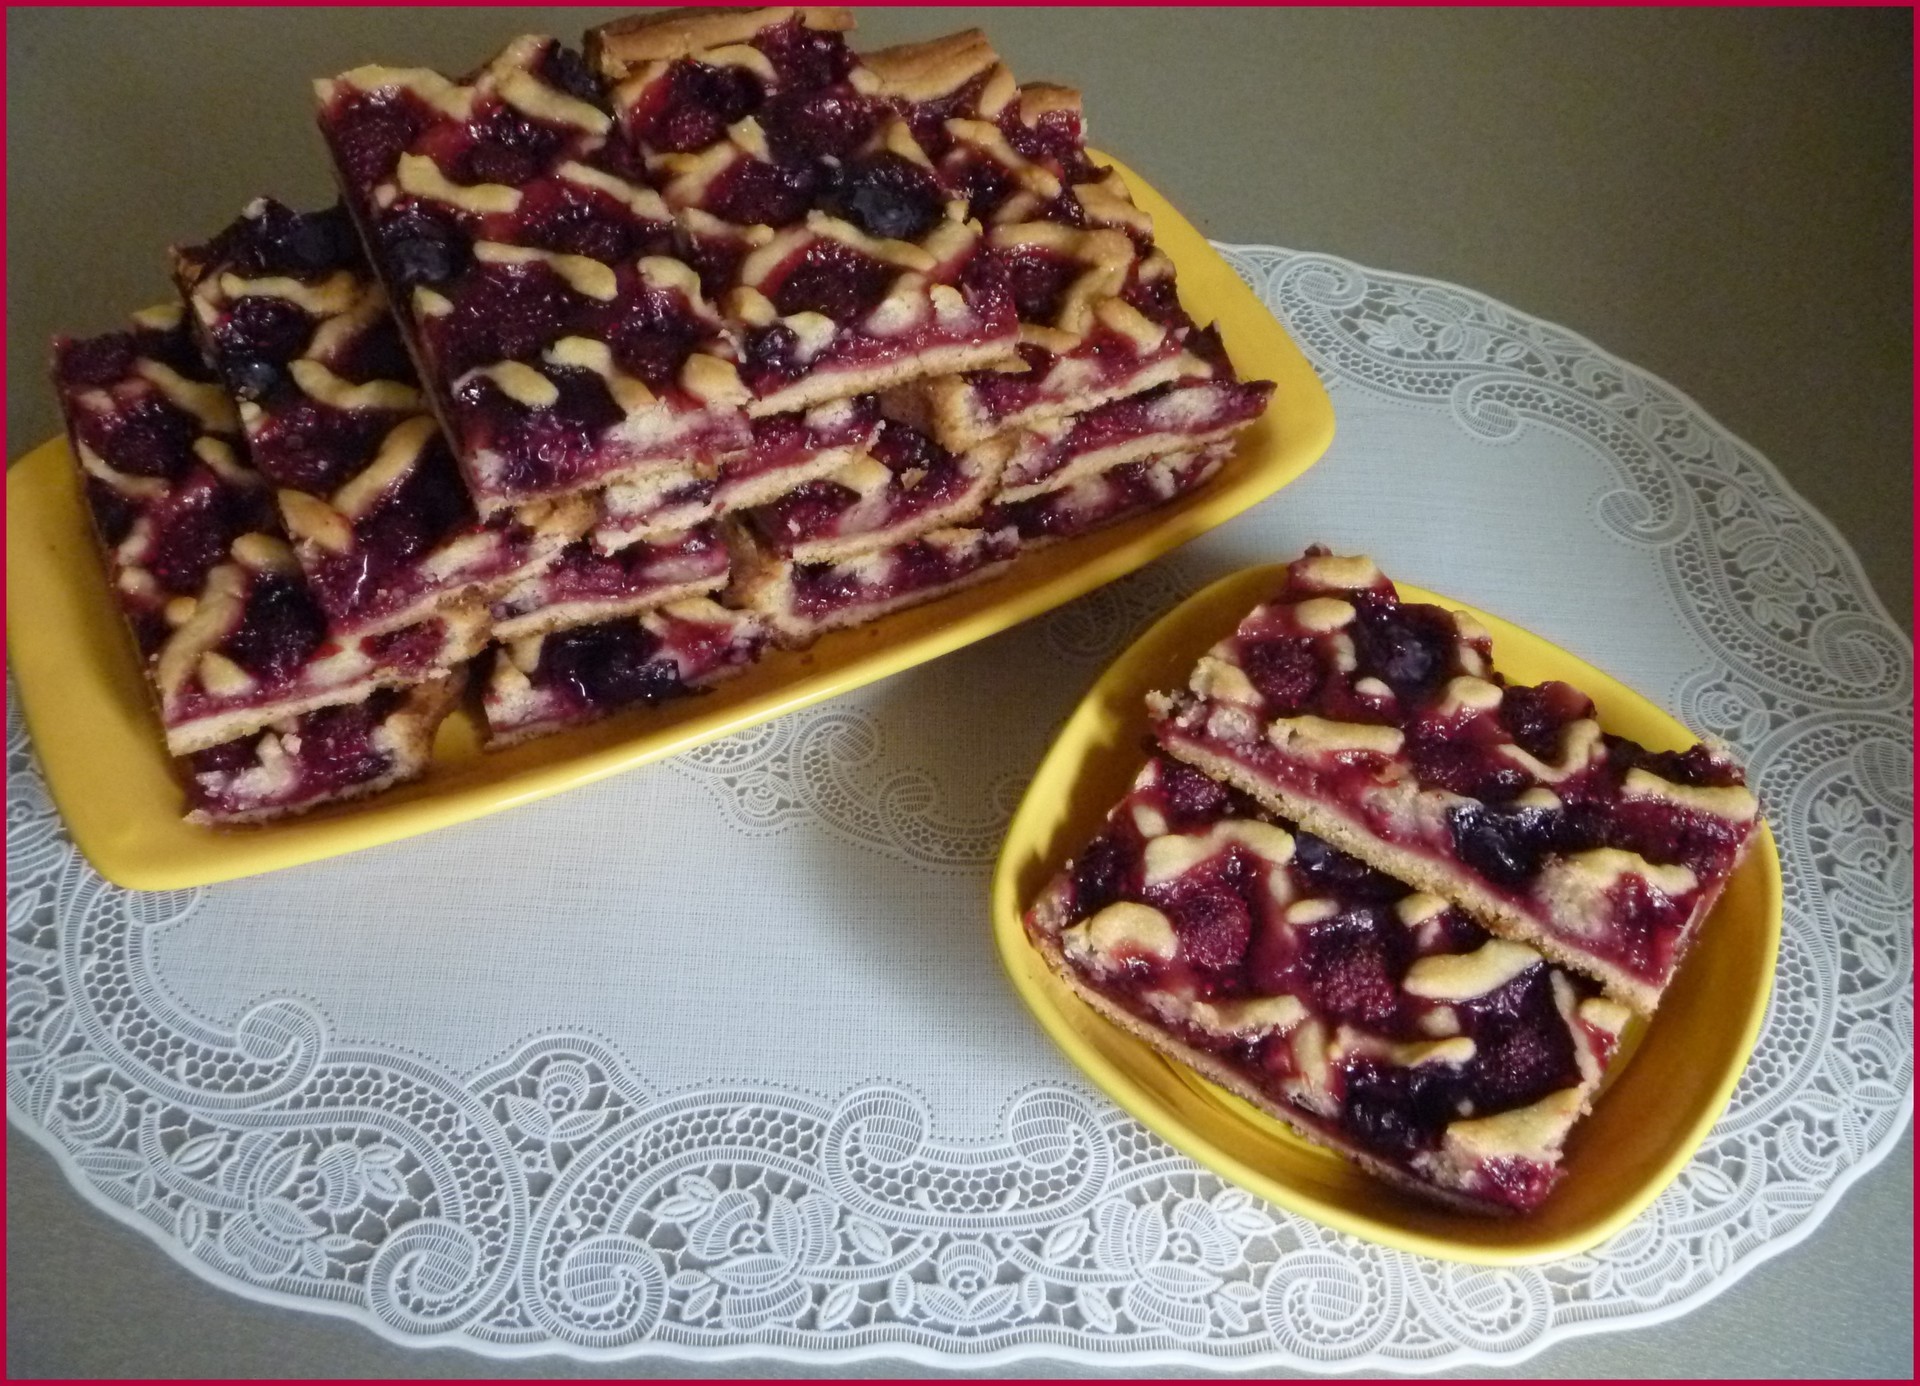 Песочное тесто для пирога с ягодами рецепт с фото пошагово в духовке с маргарином